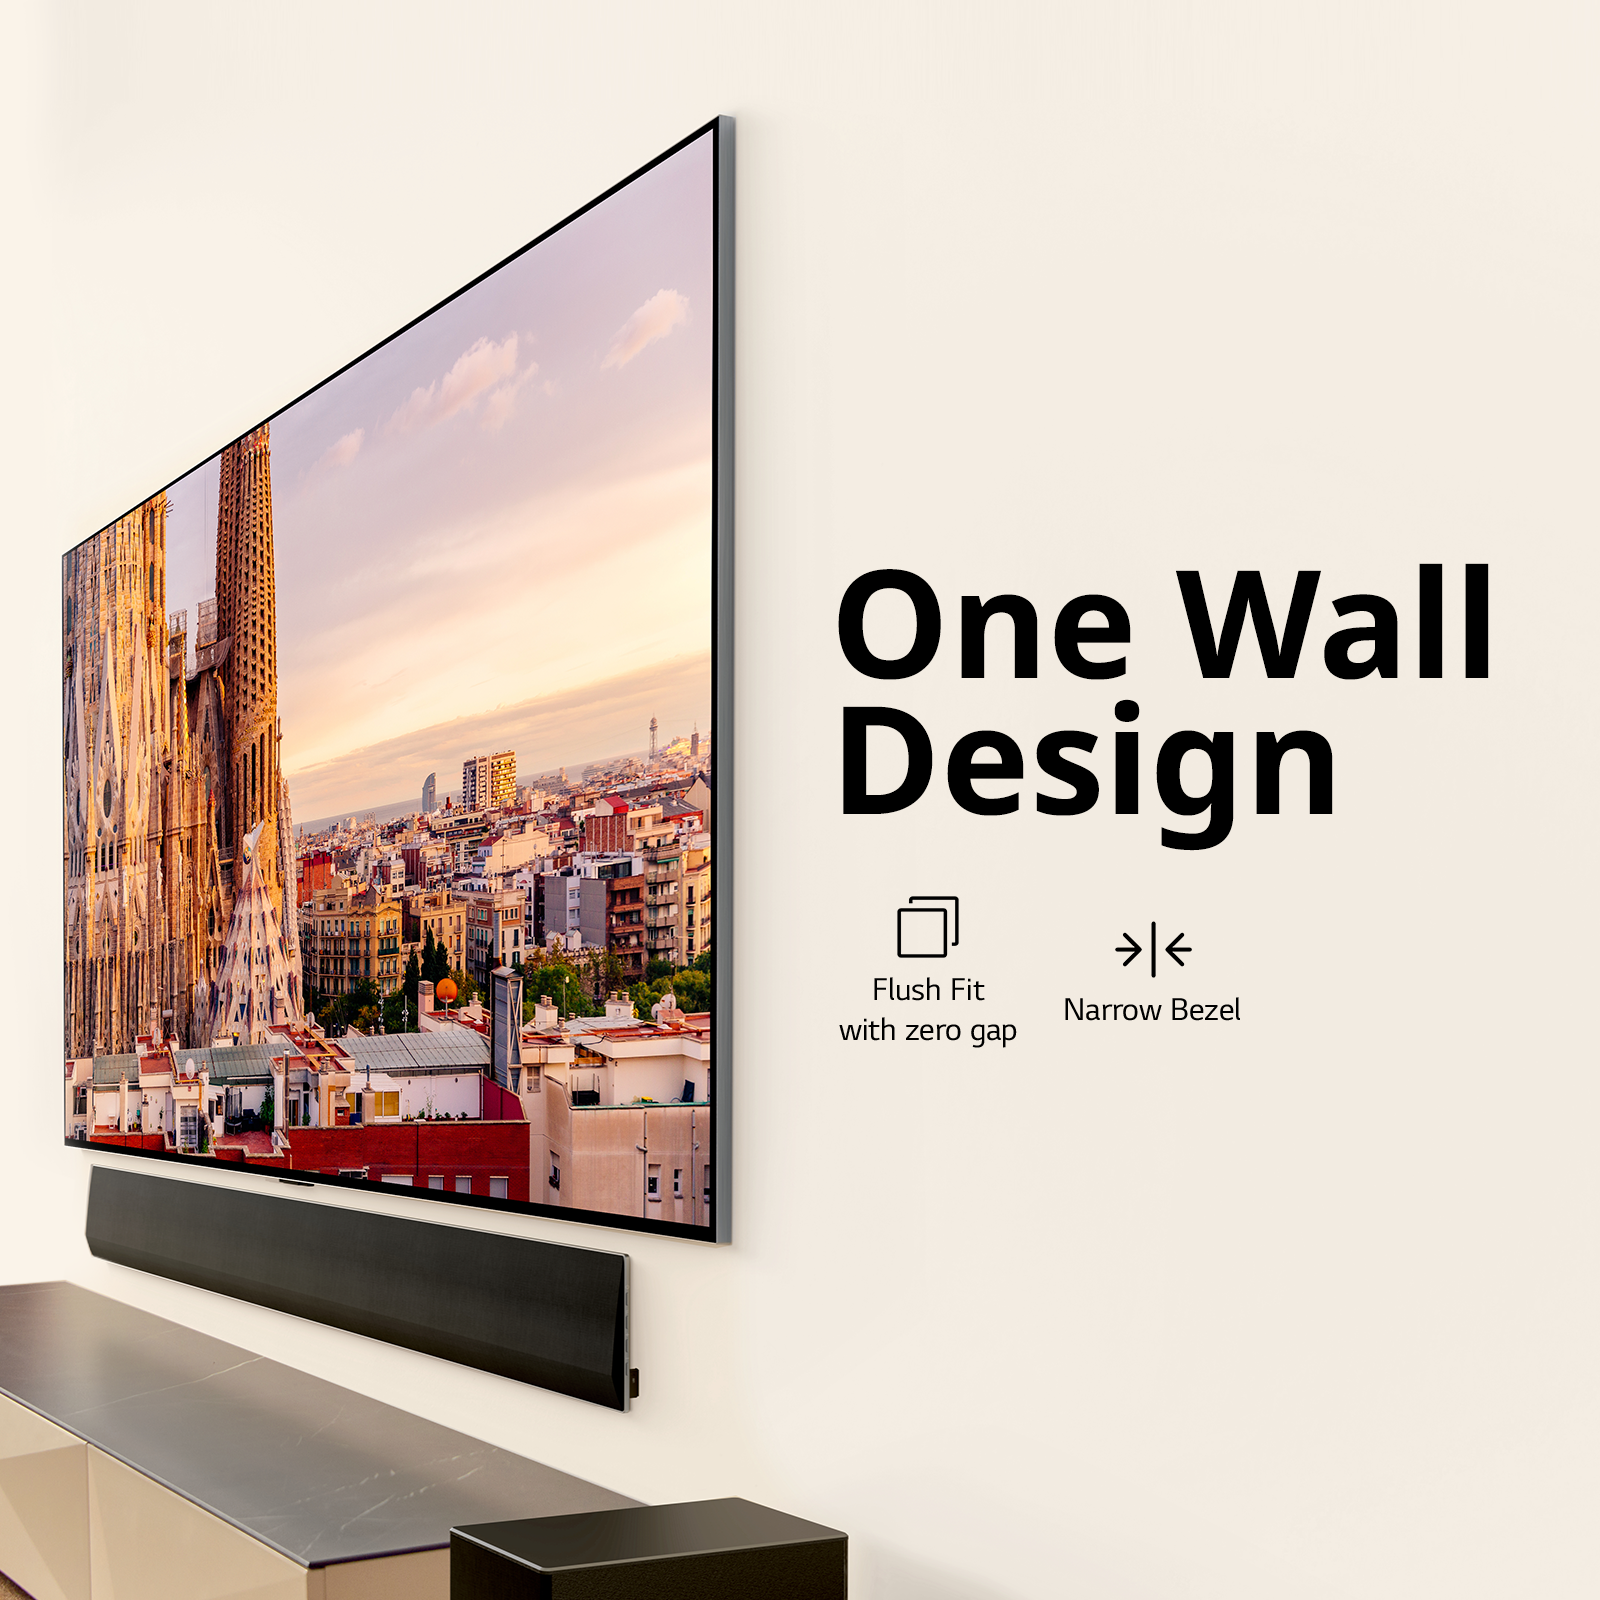 LG ra mắt loạt TV mới, đánh dấu 10 năm gia nhập thị trường TV OLED toàn cầu - Ảnh 3.